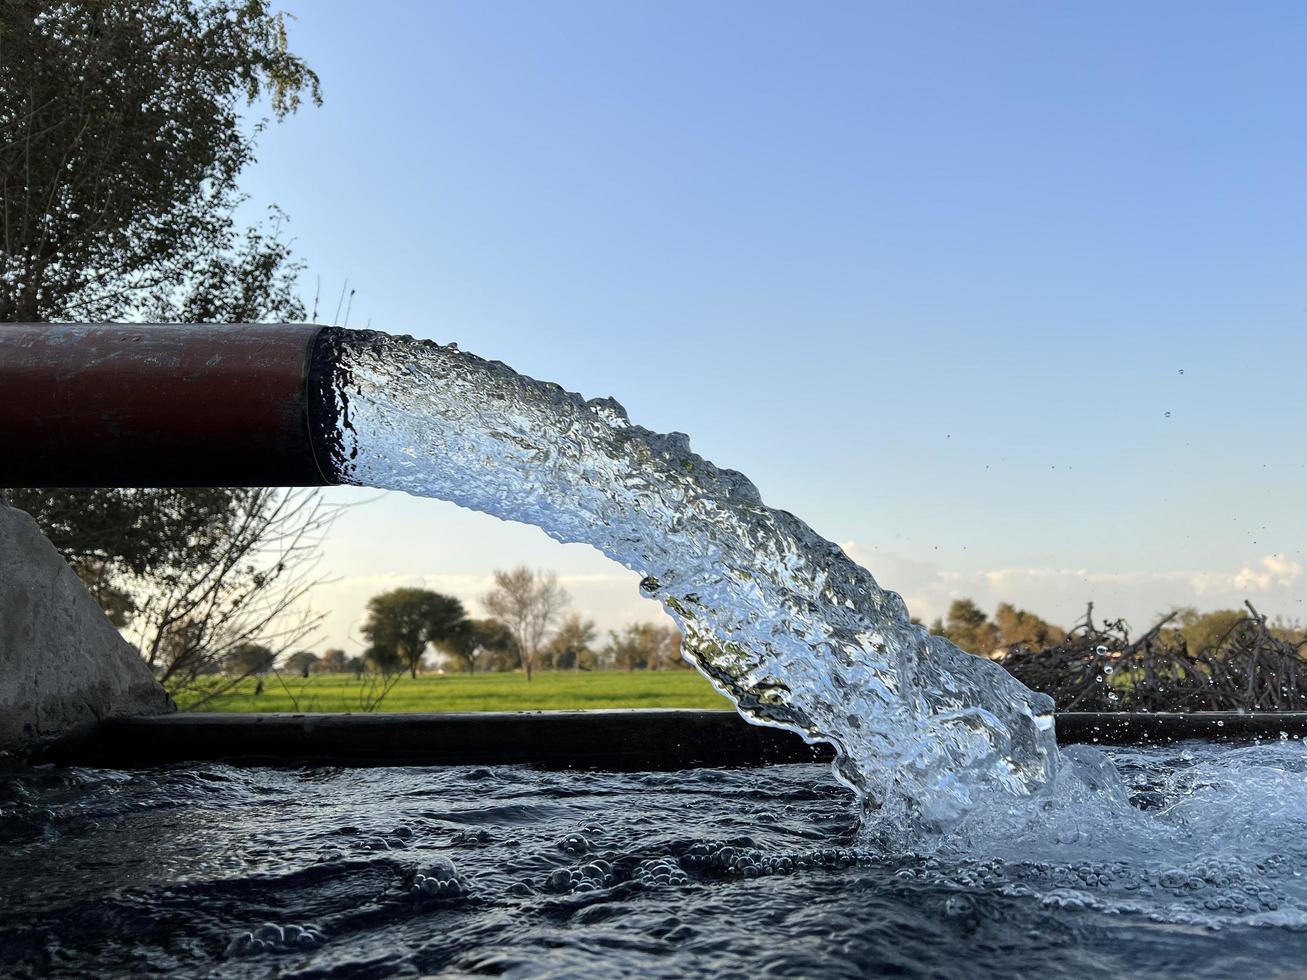 débit d'eau d'irrigation du tuyau au canal pour les champs agricoles photo